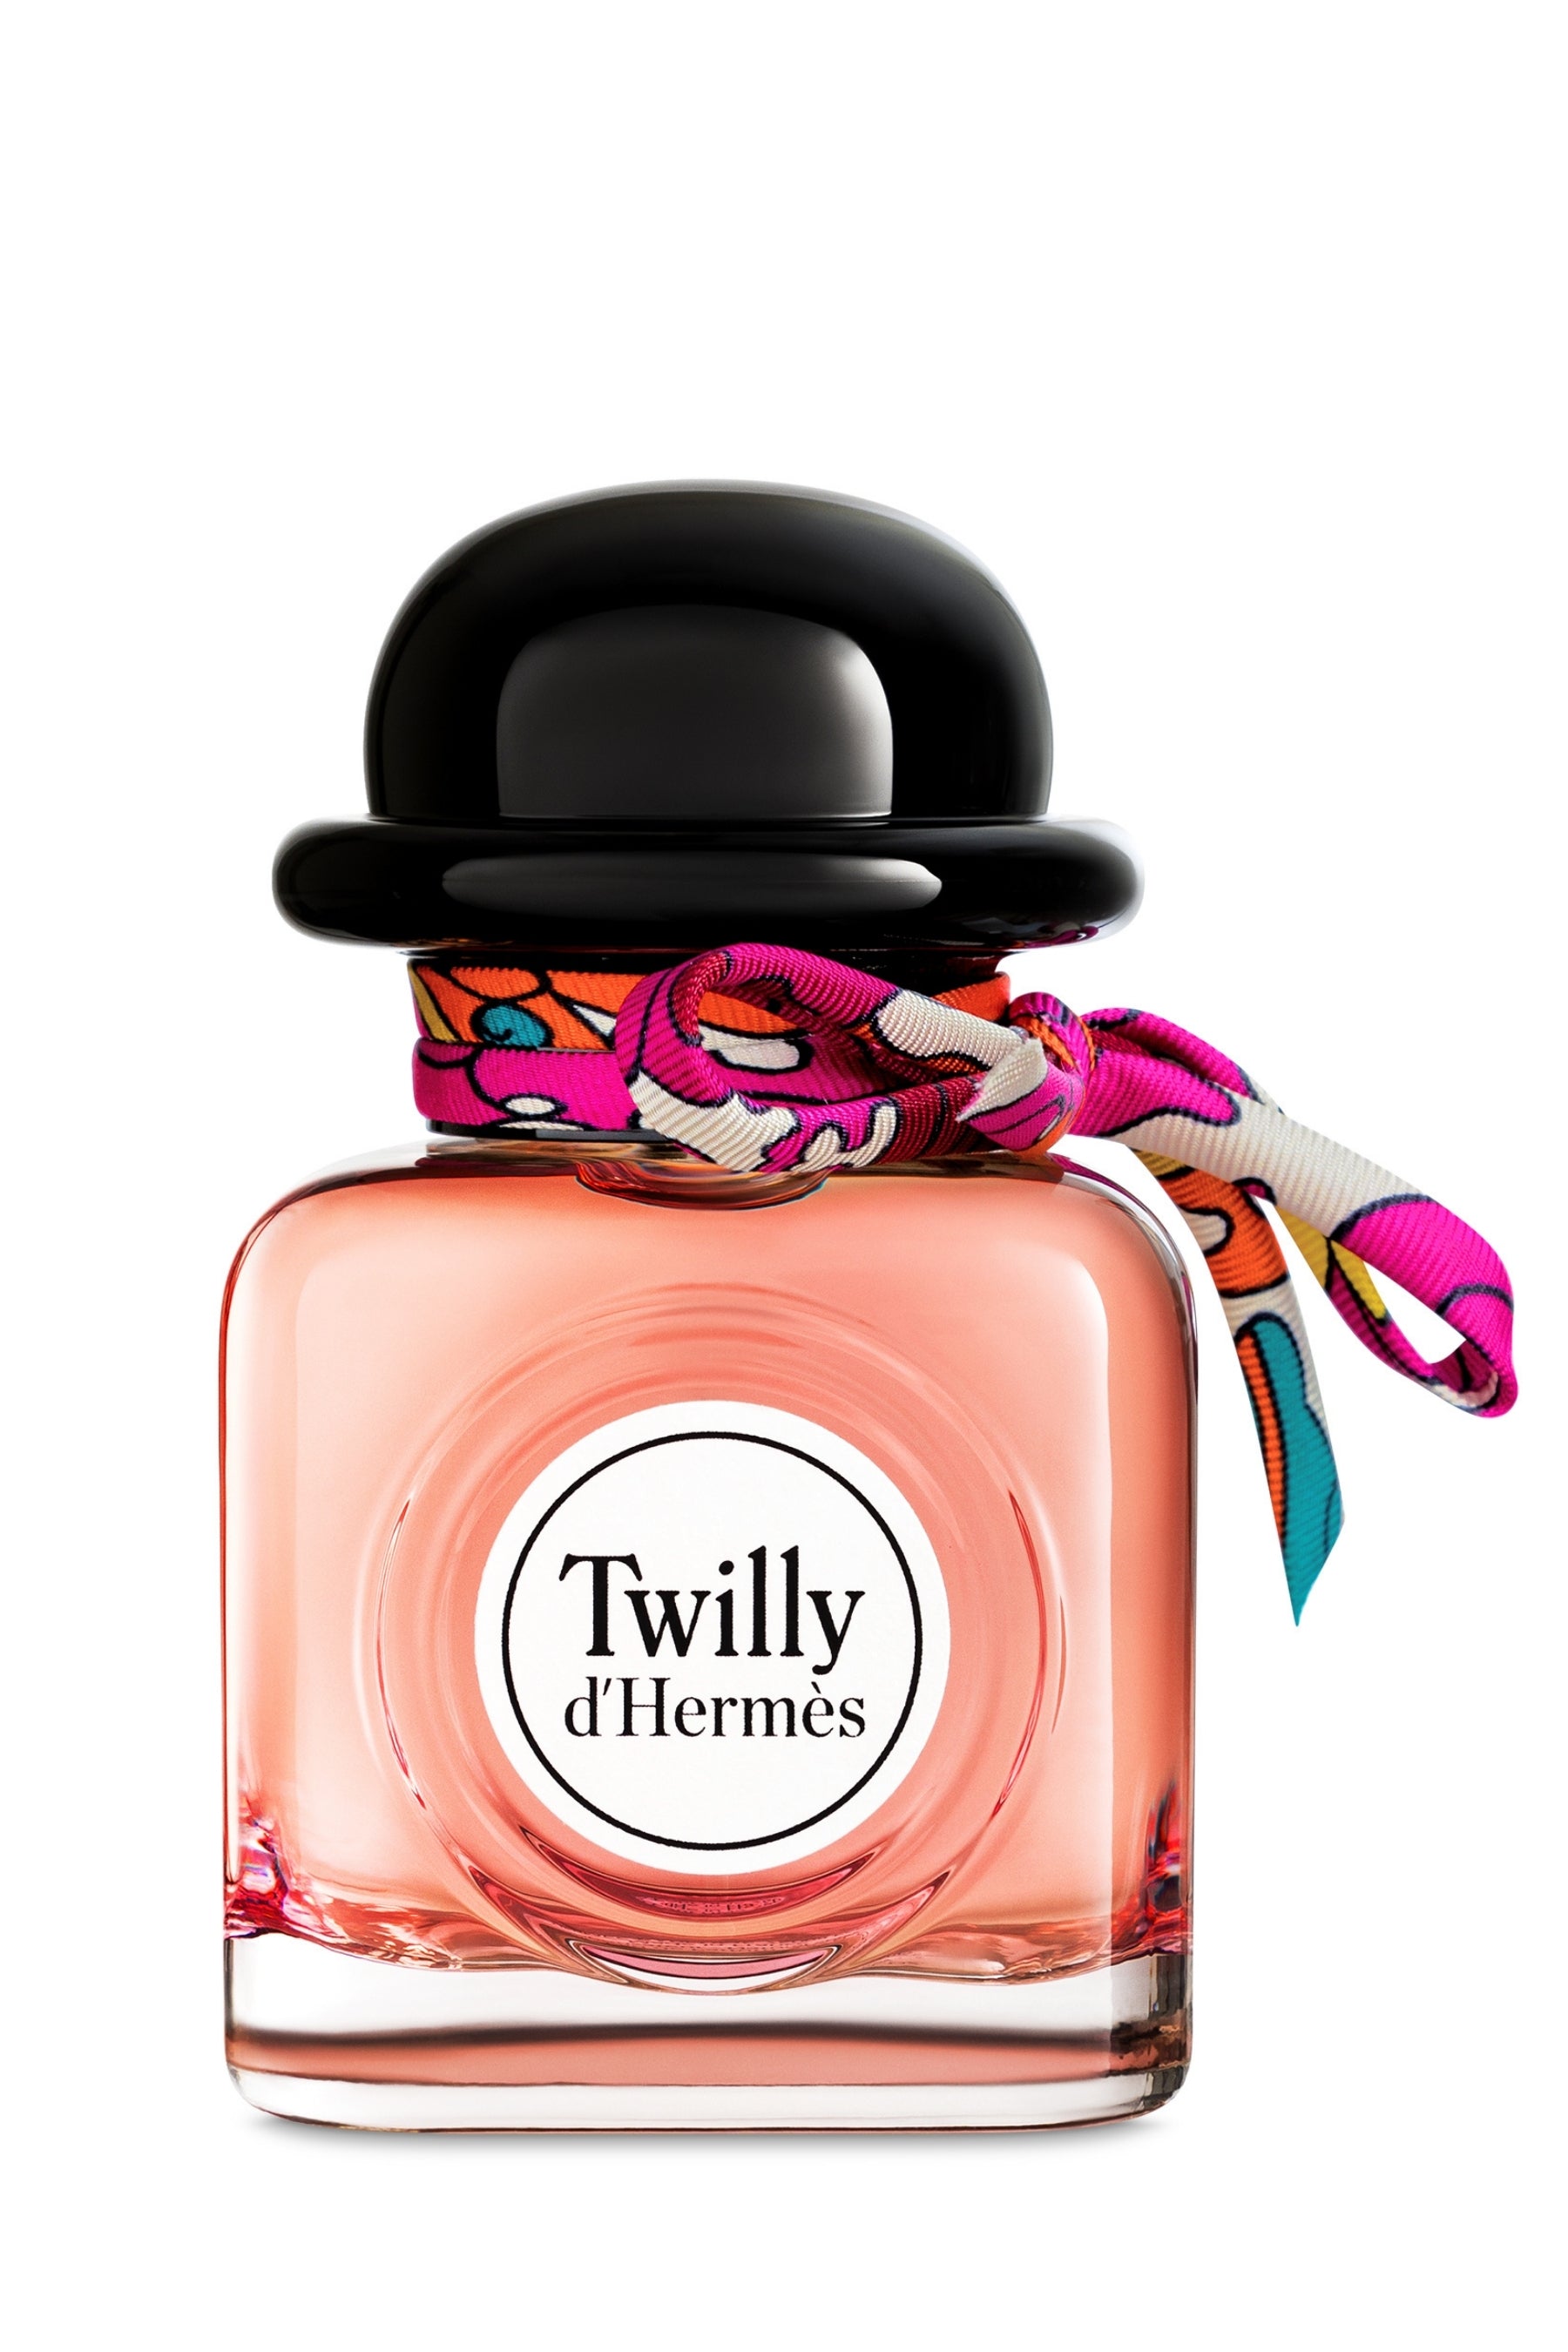 Hermes | Twilly D'Hermès Eau de Parfum